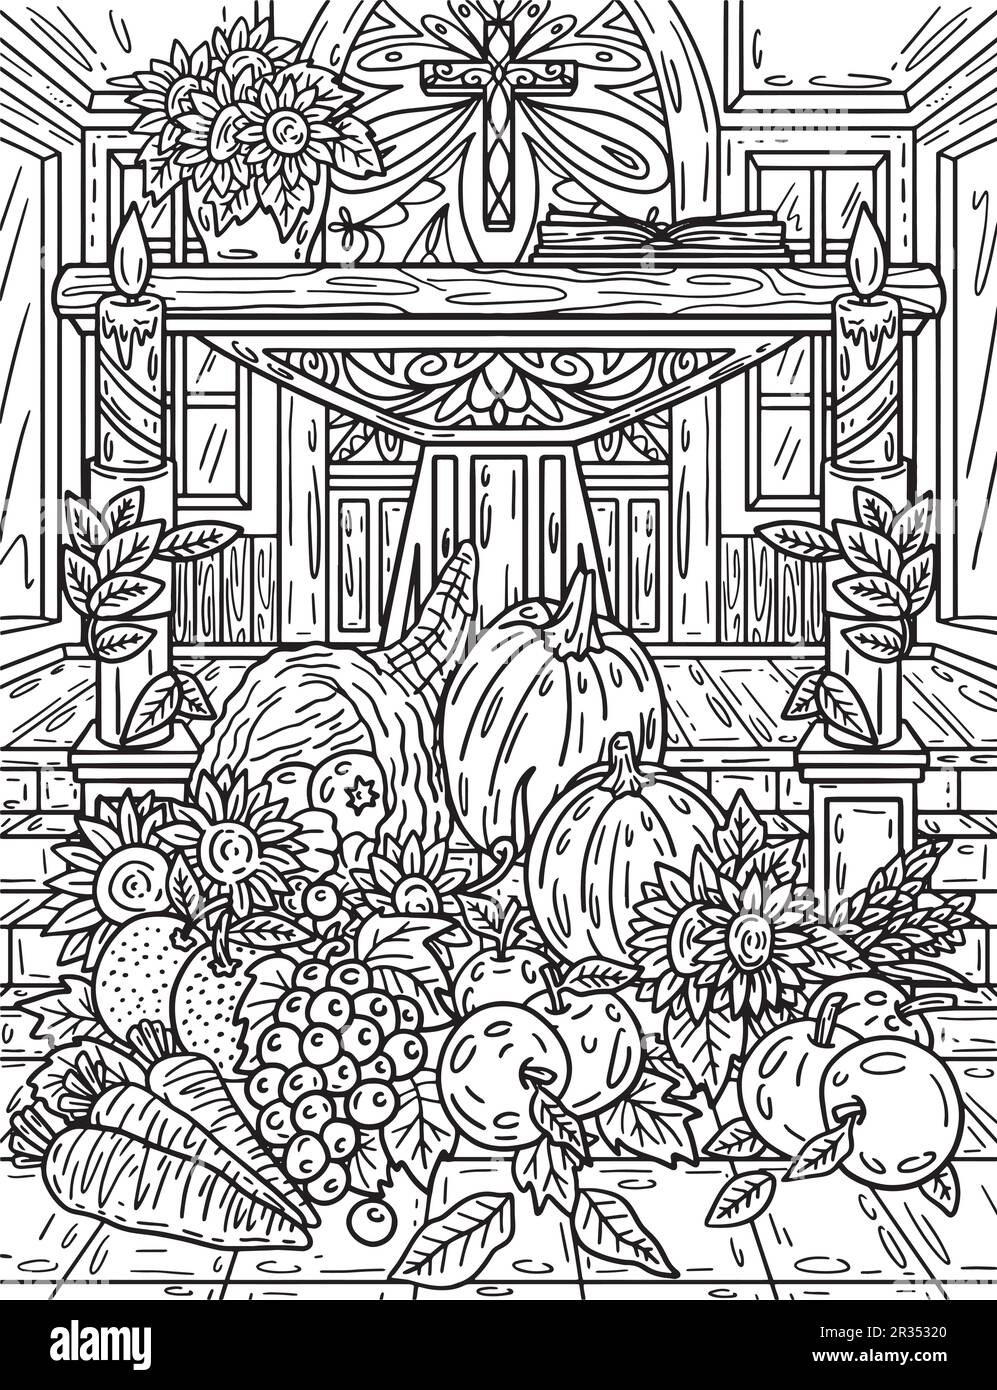 Autel de Thanksgiving récolte d'automne adultes coloration Illustration de Vecteur